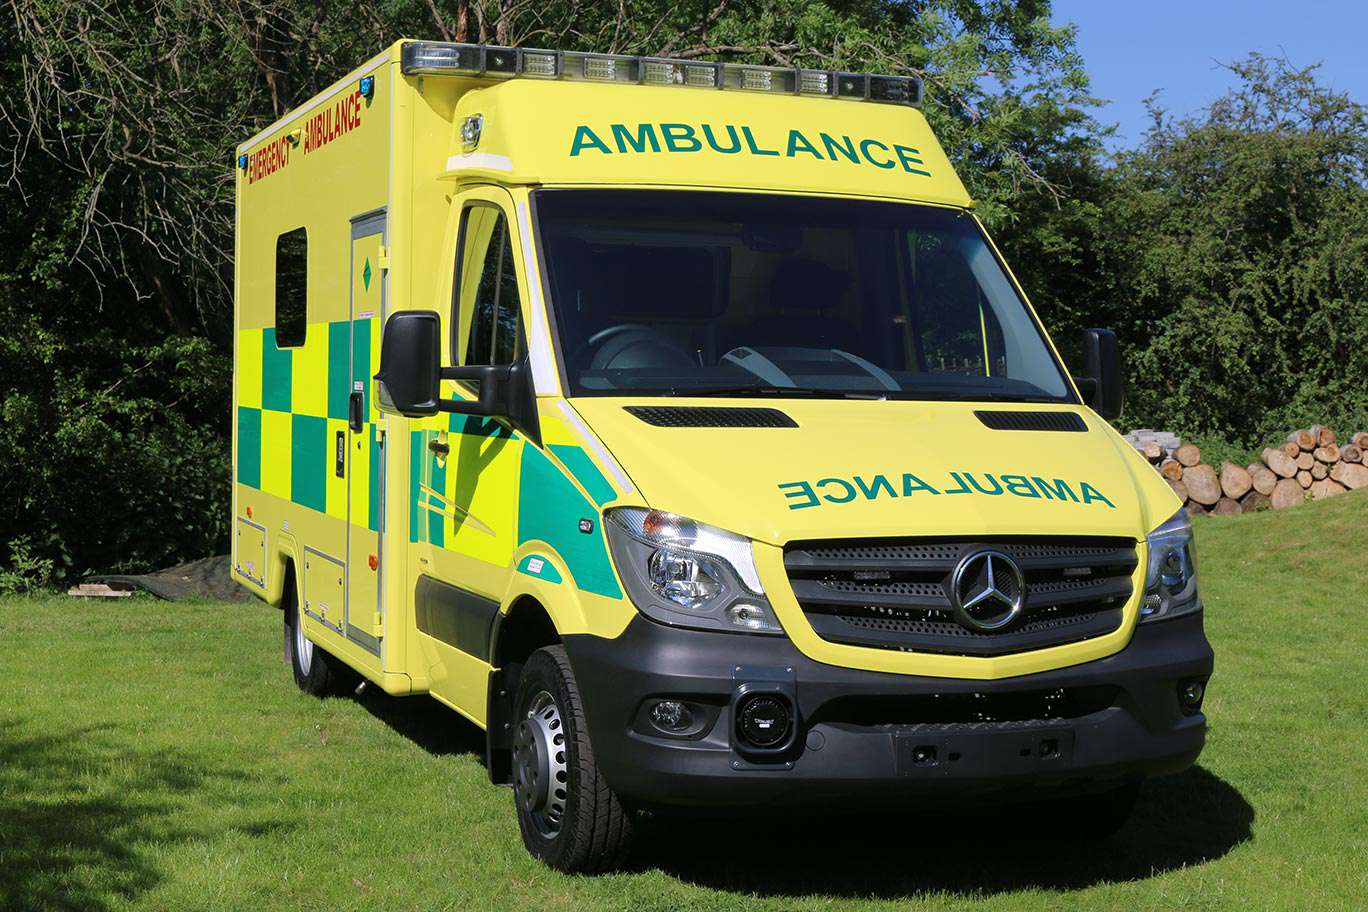 DLL remounted ambulance